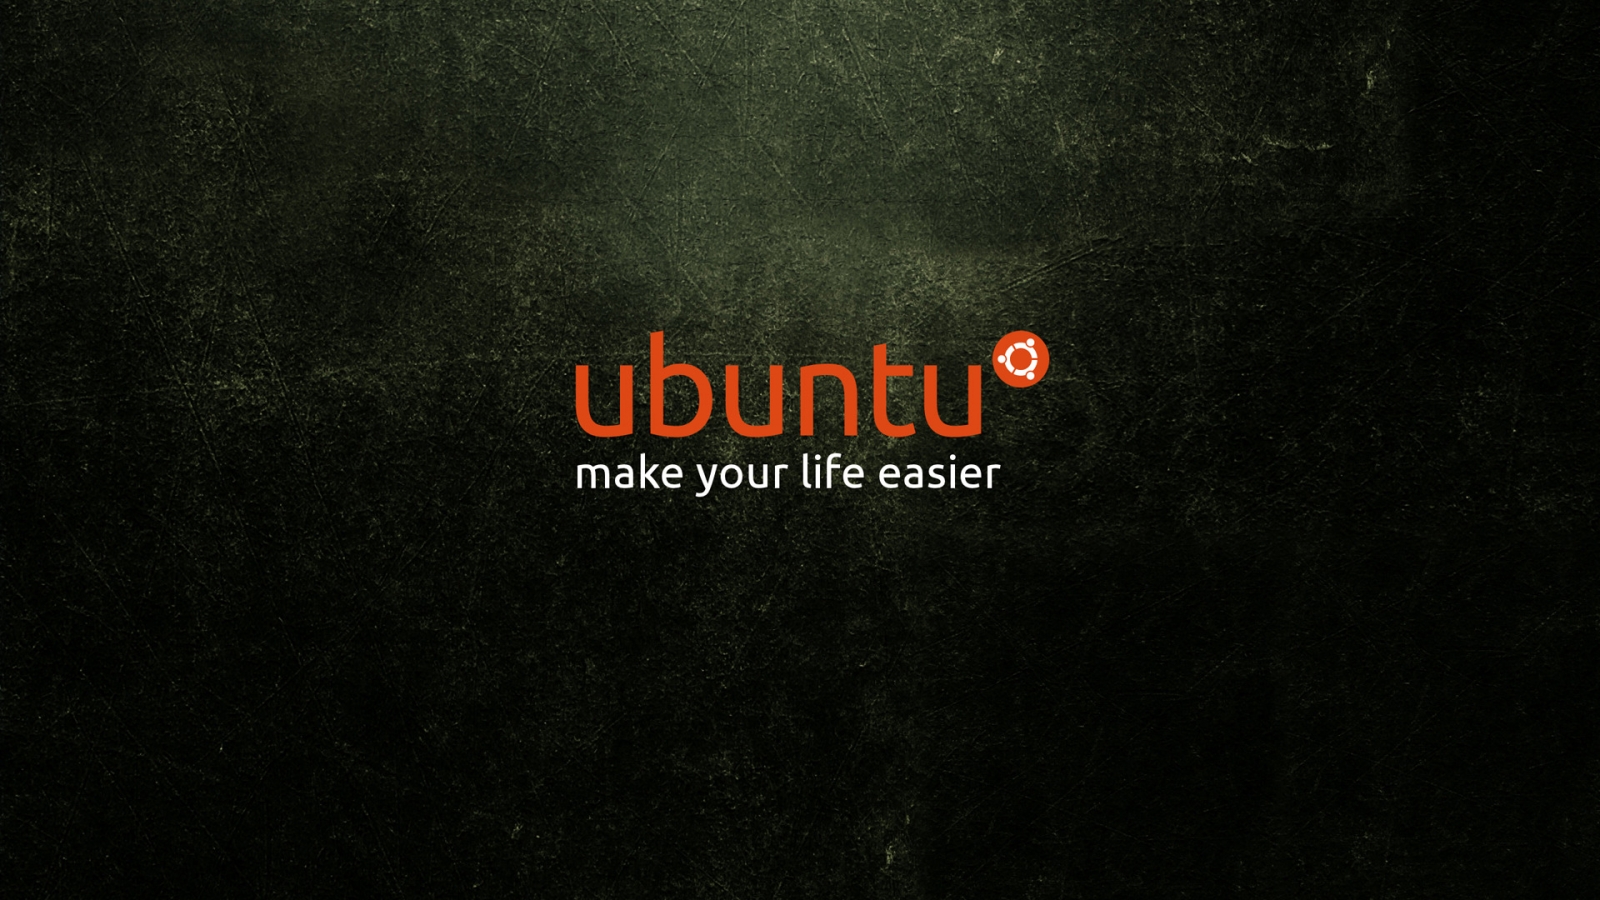 Ubuntu Life for 1600 x 900 HDTV resolution